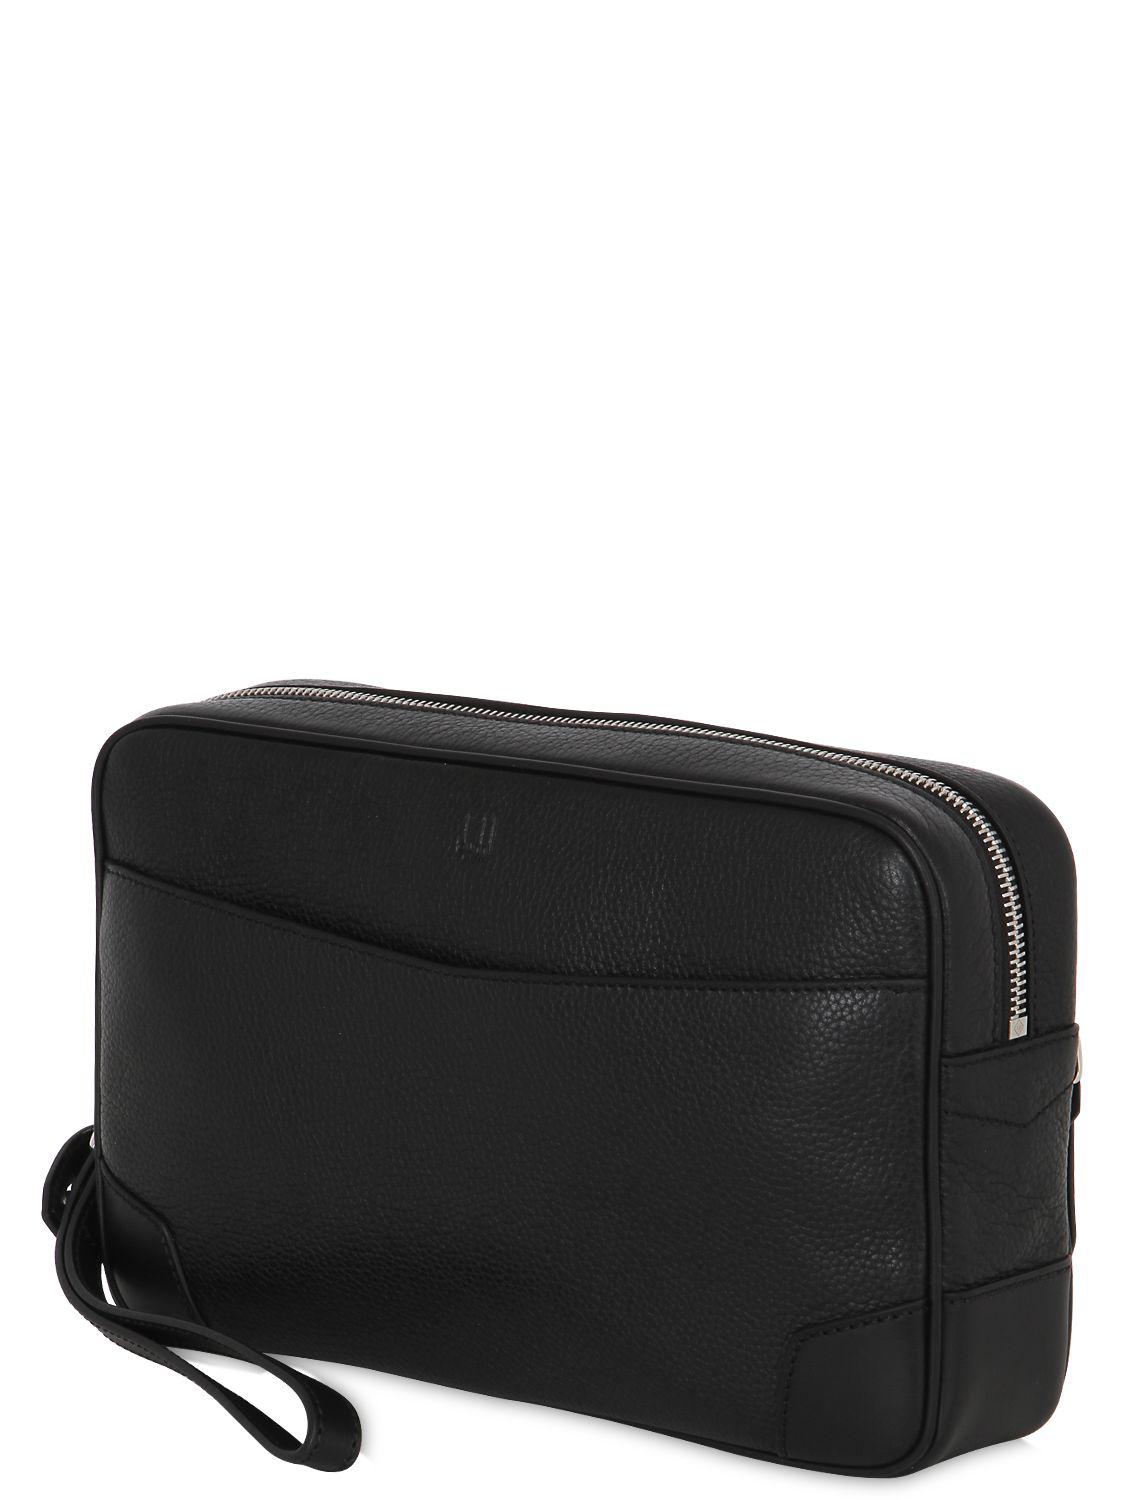 Dunhill Boston Pochette Leather Bag in Black for Men - Lyst